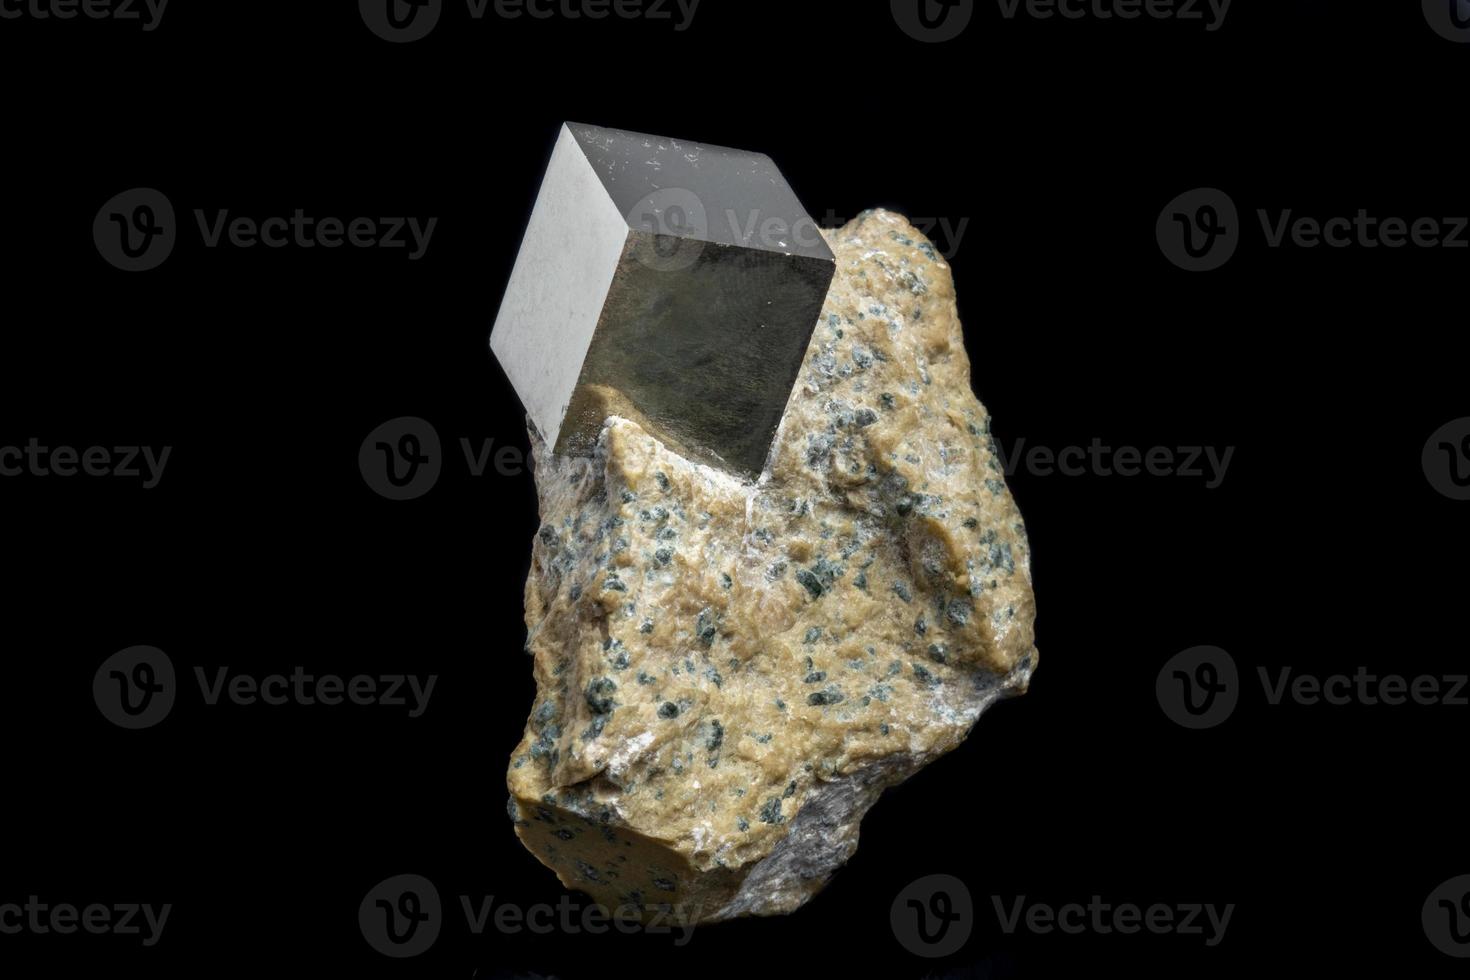 macro pyriet mineraal steen Aan zwart achtergrond foto